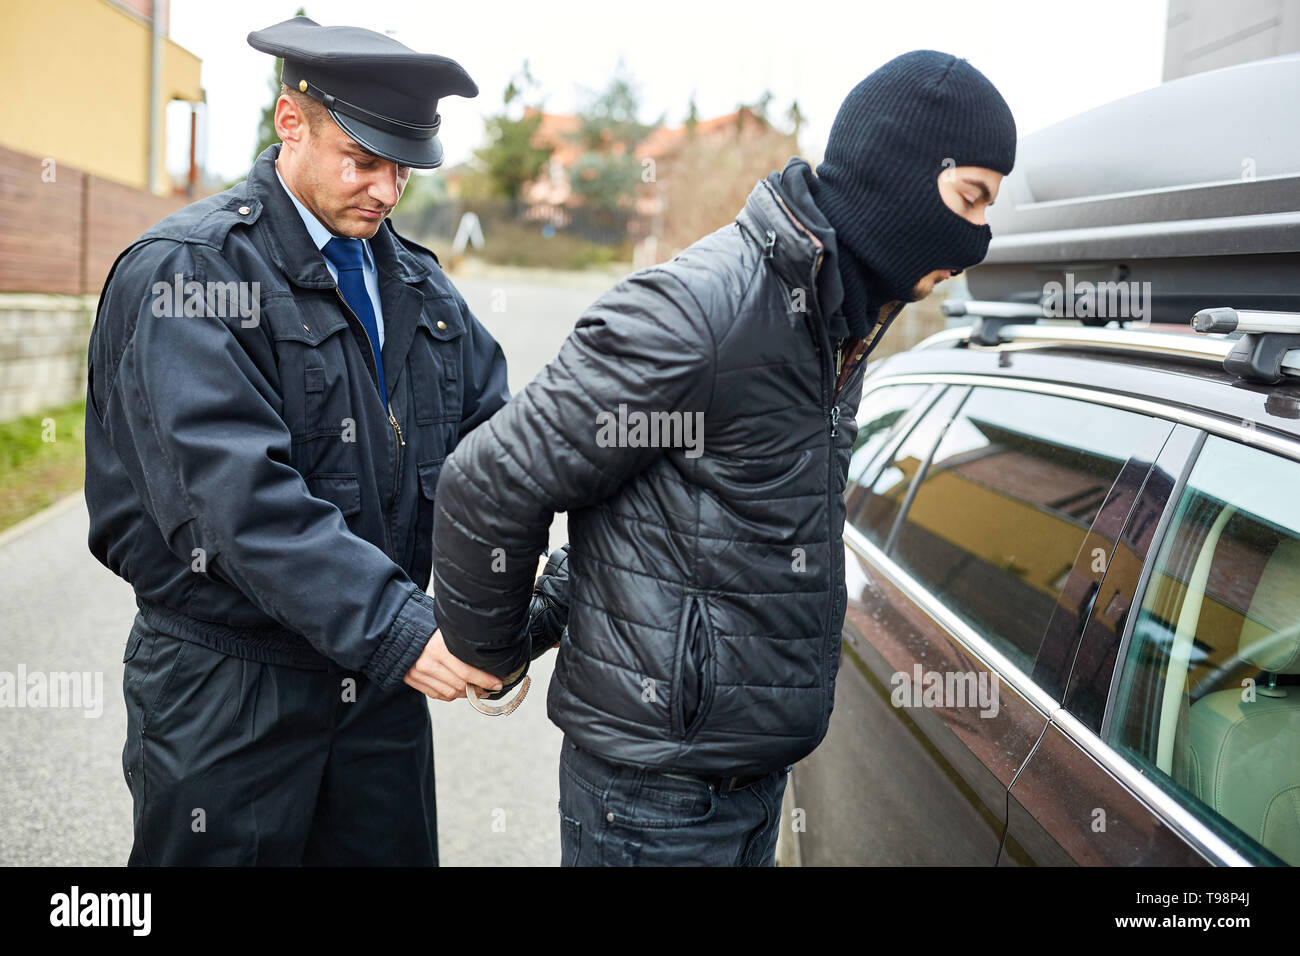 Patrolman mette in manette su arresto di un criminale Foto Stock